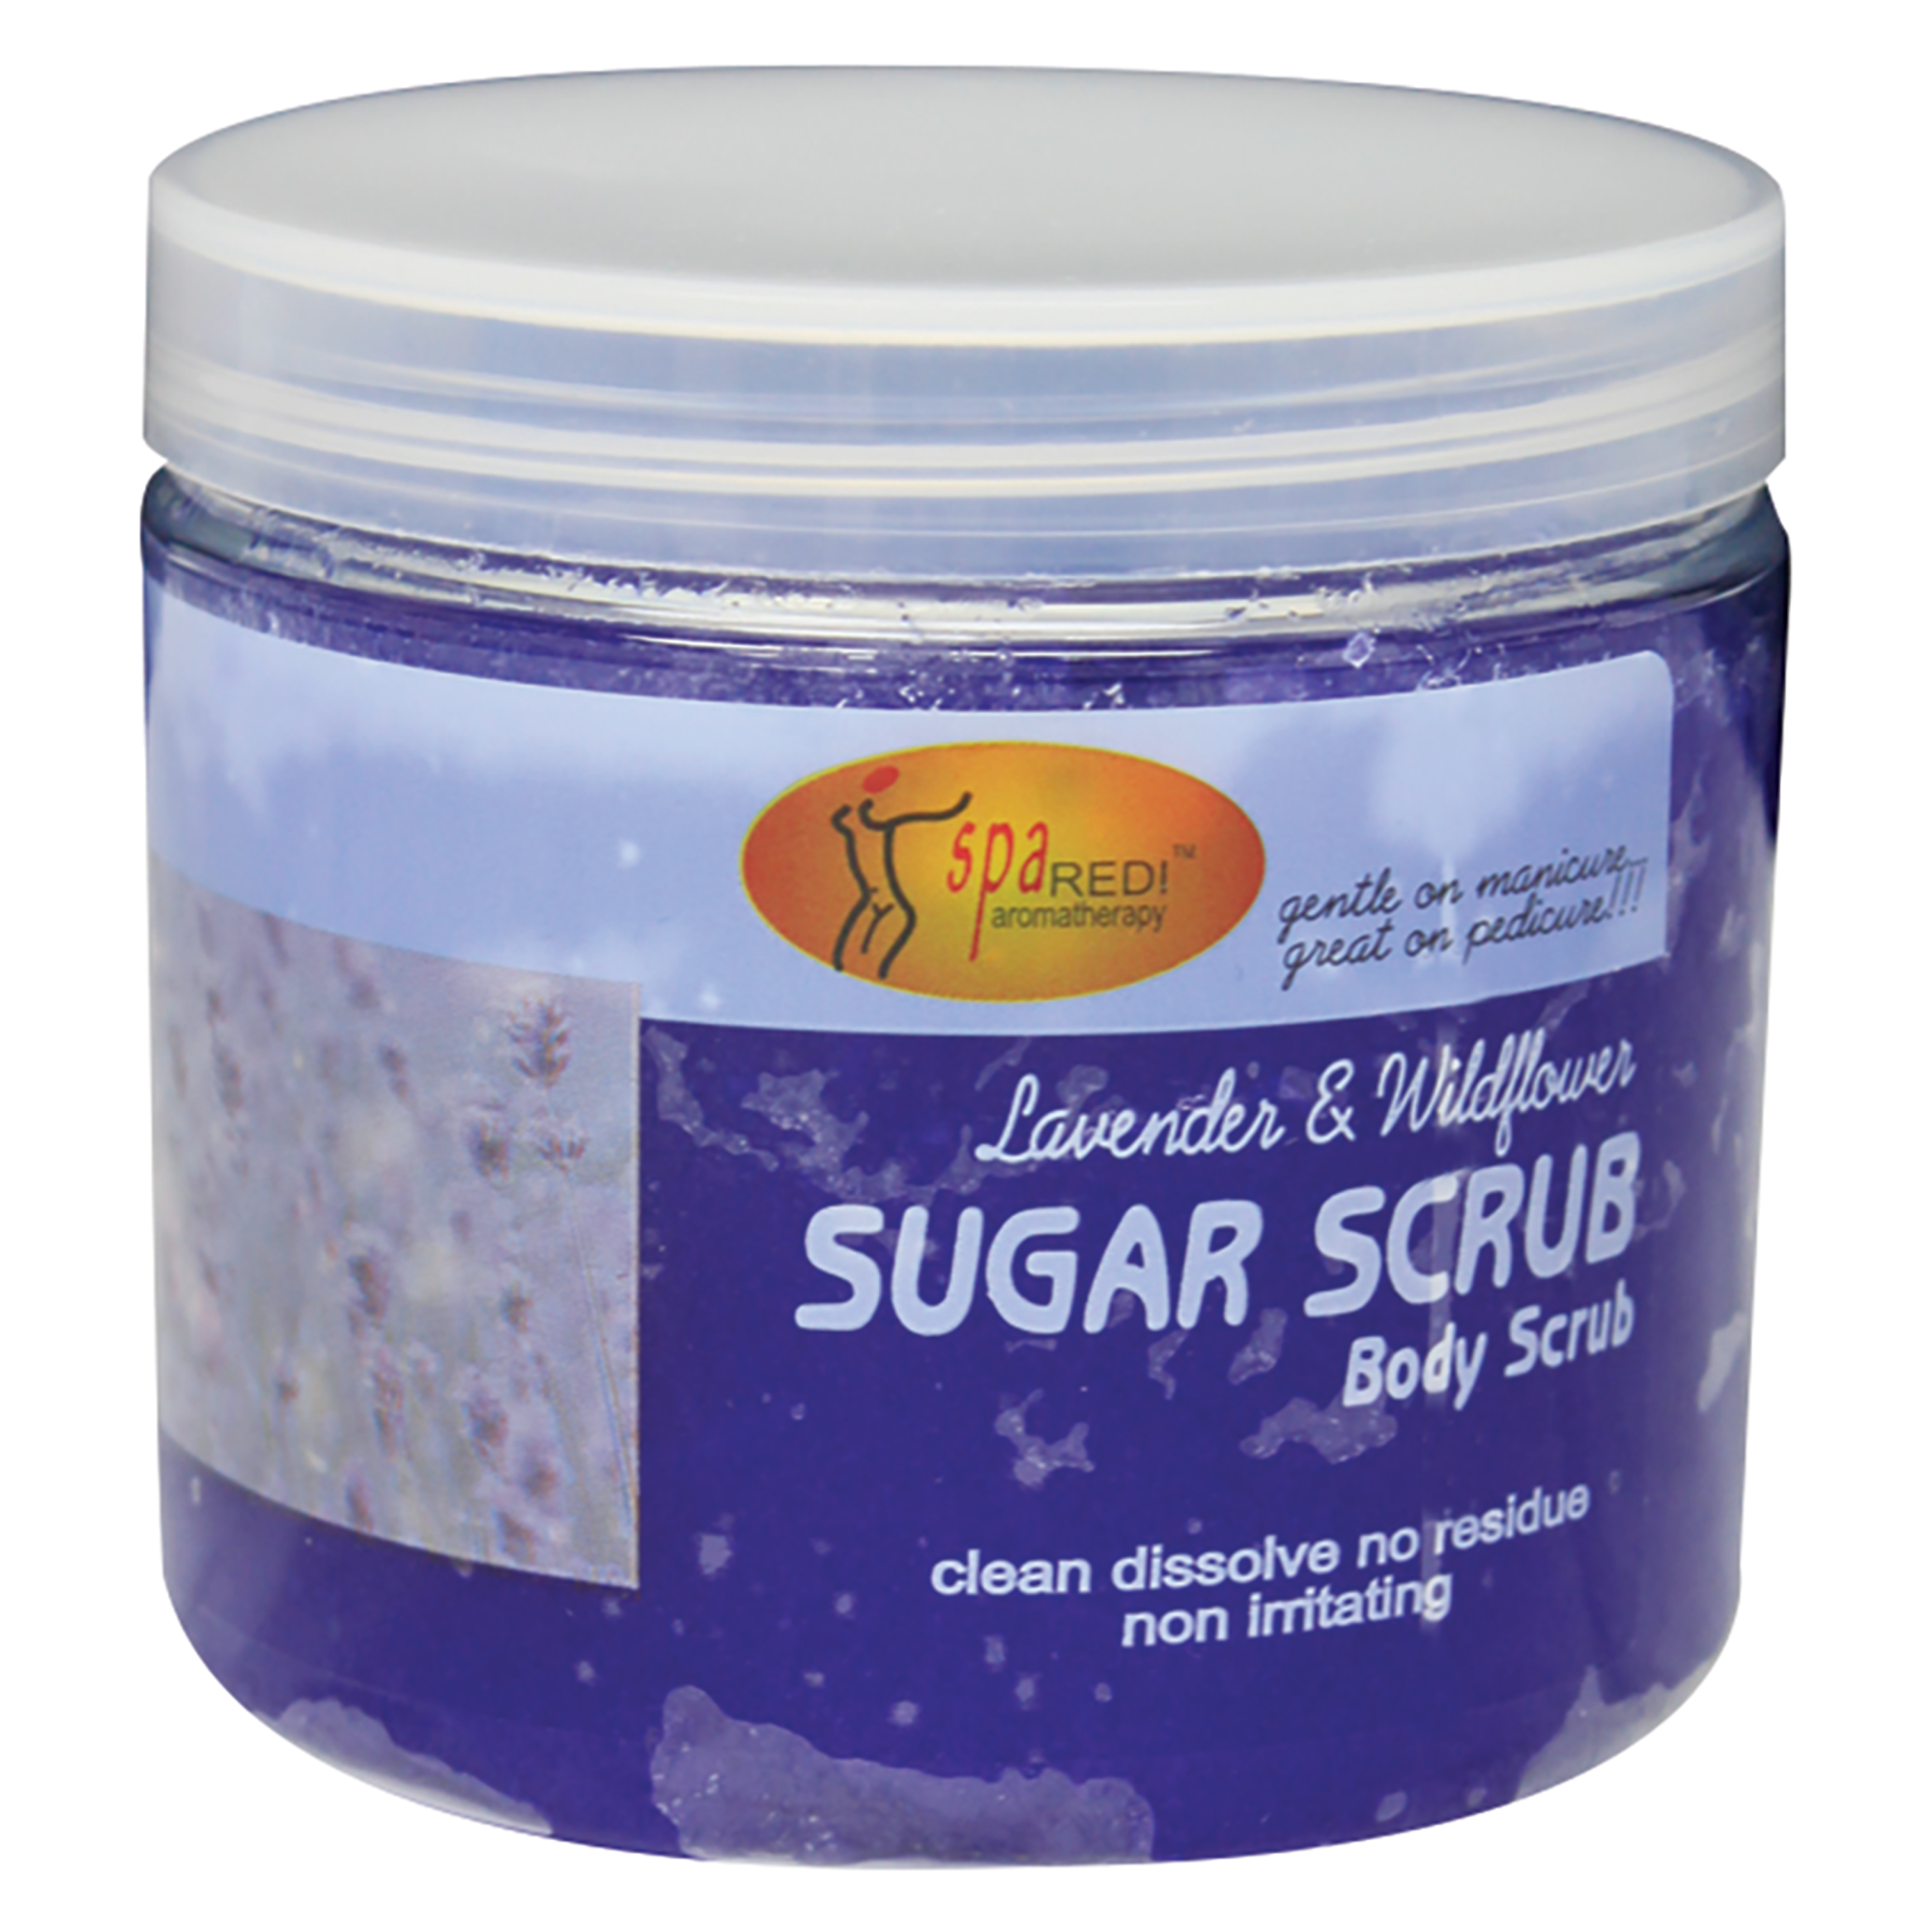 Sugar Scrub Body Scrub - Lavender & Wildflower